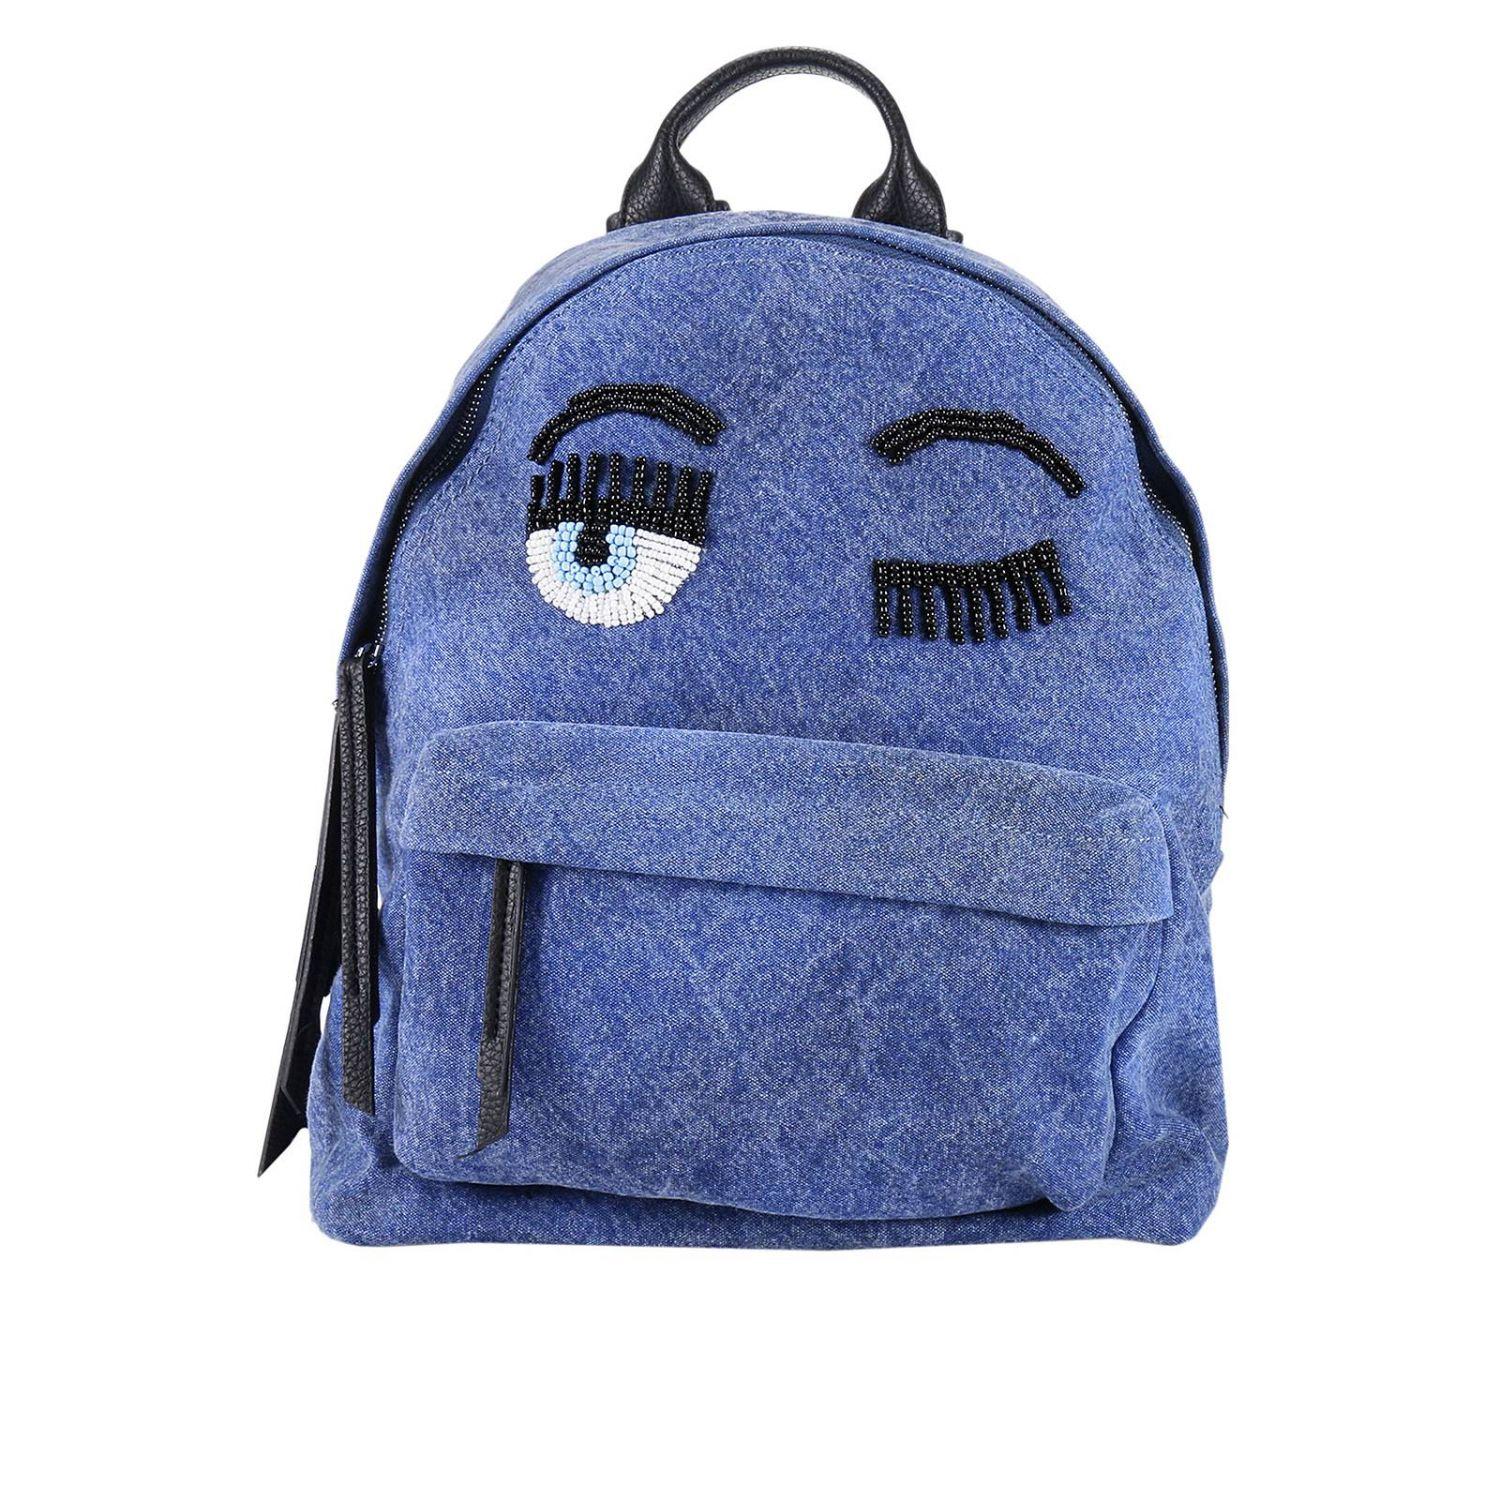 Chiara ferragni Shoulder Bag Handbag Women in Blue | Lyst